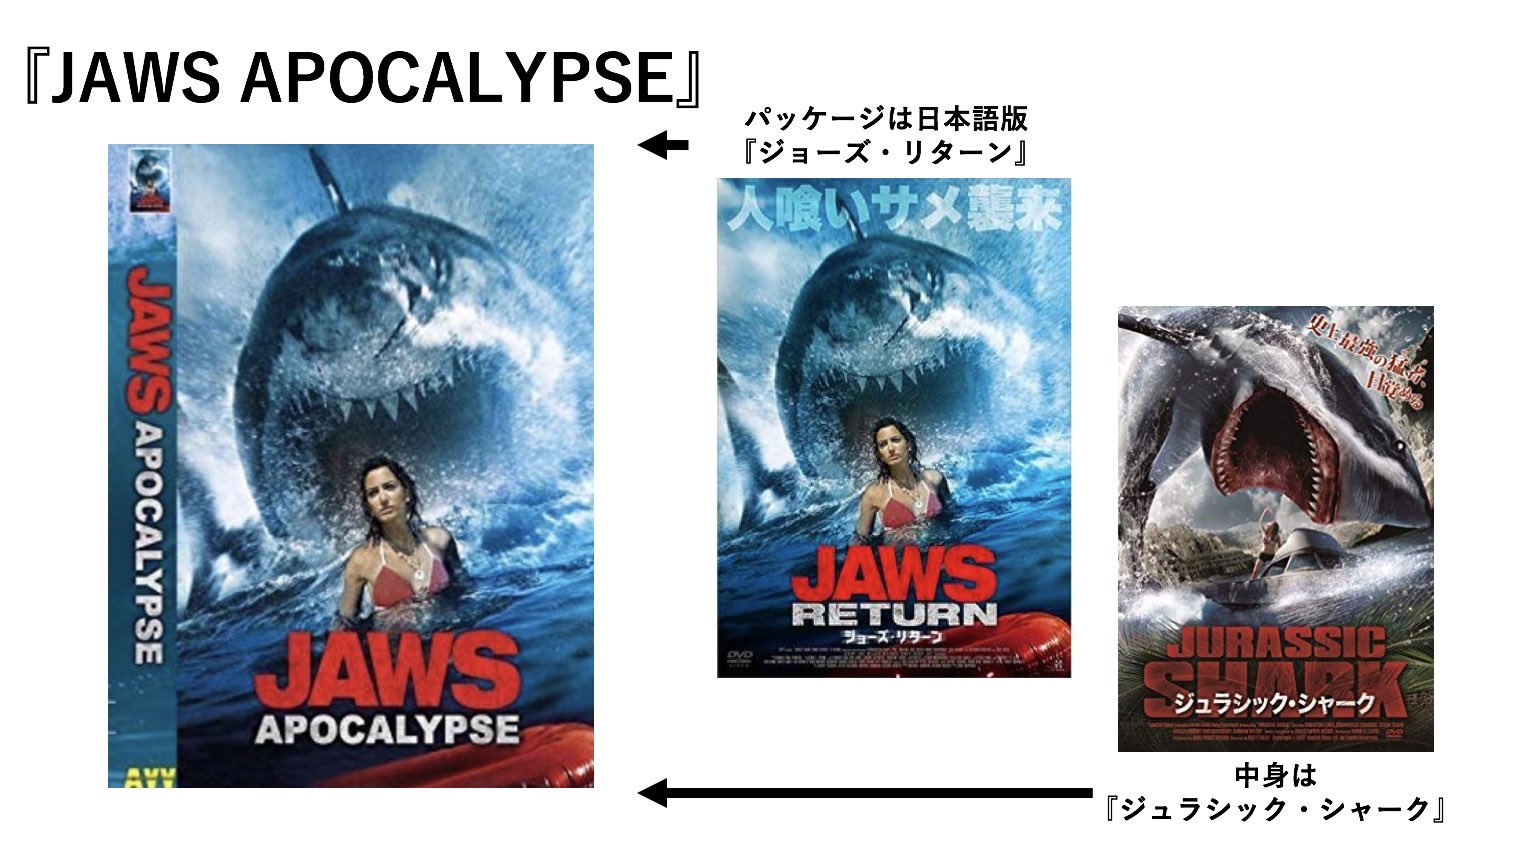 サメ映画ルーキー パクりパクられが常態化しているサメ映画ですが 一番混迷を極めているのは間違いなくドイツのサメ映画市場だと思います とりあえずjawsというタイトルにしてパッケージは日本のモノを無断流用という無法地帯 著作権とは何だったのか